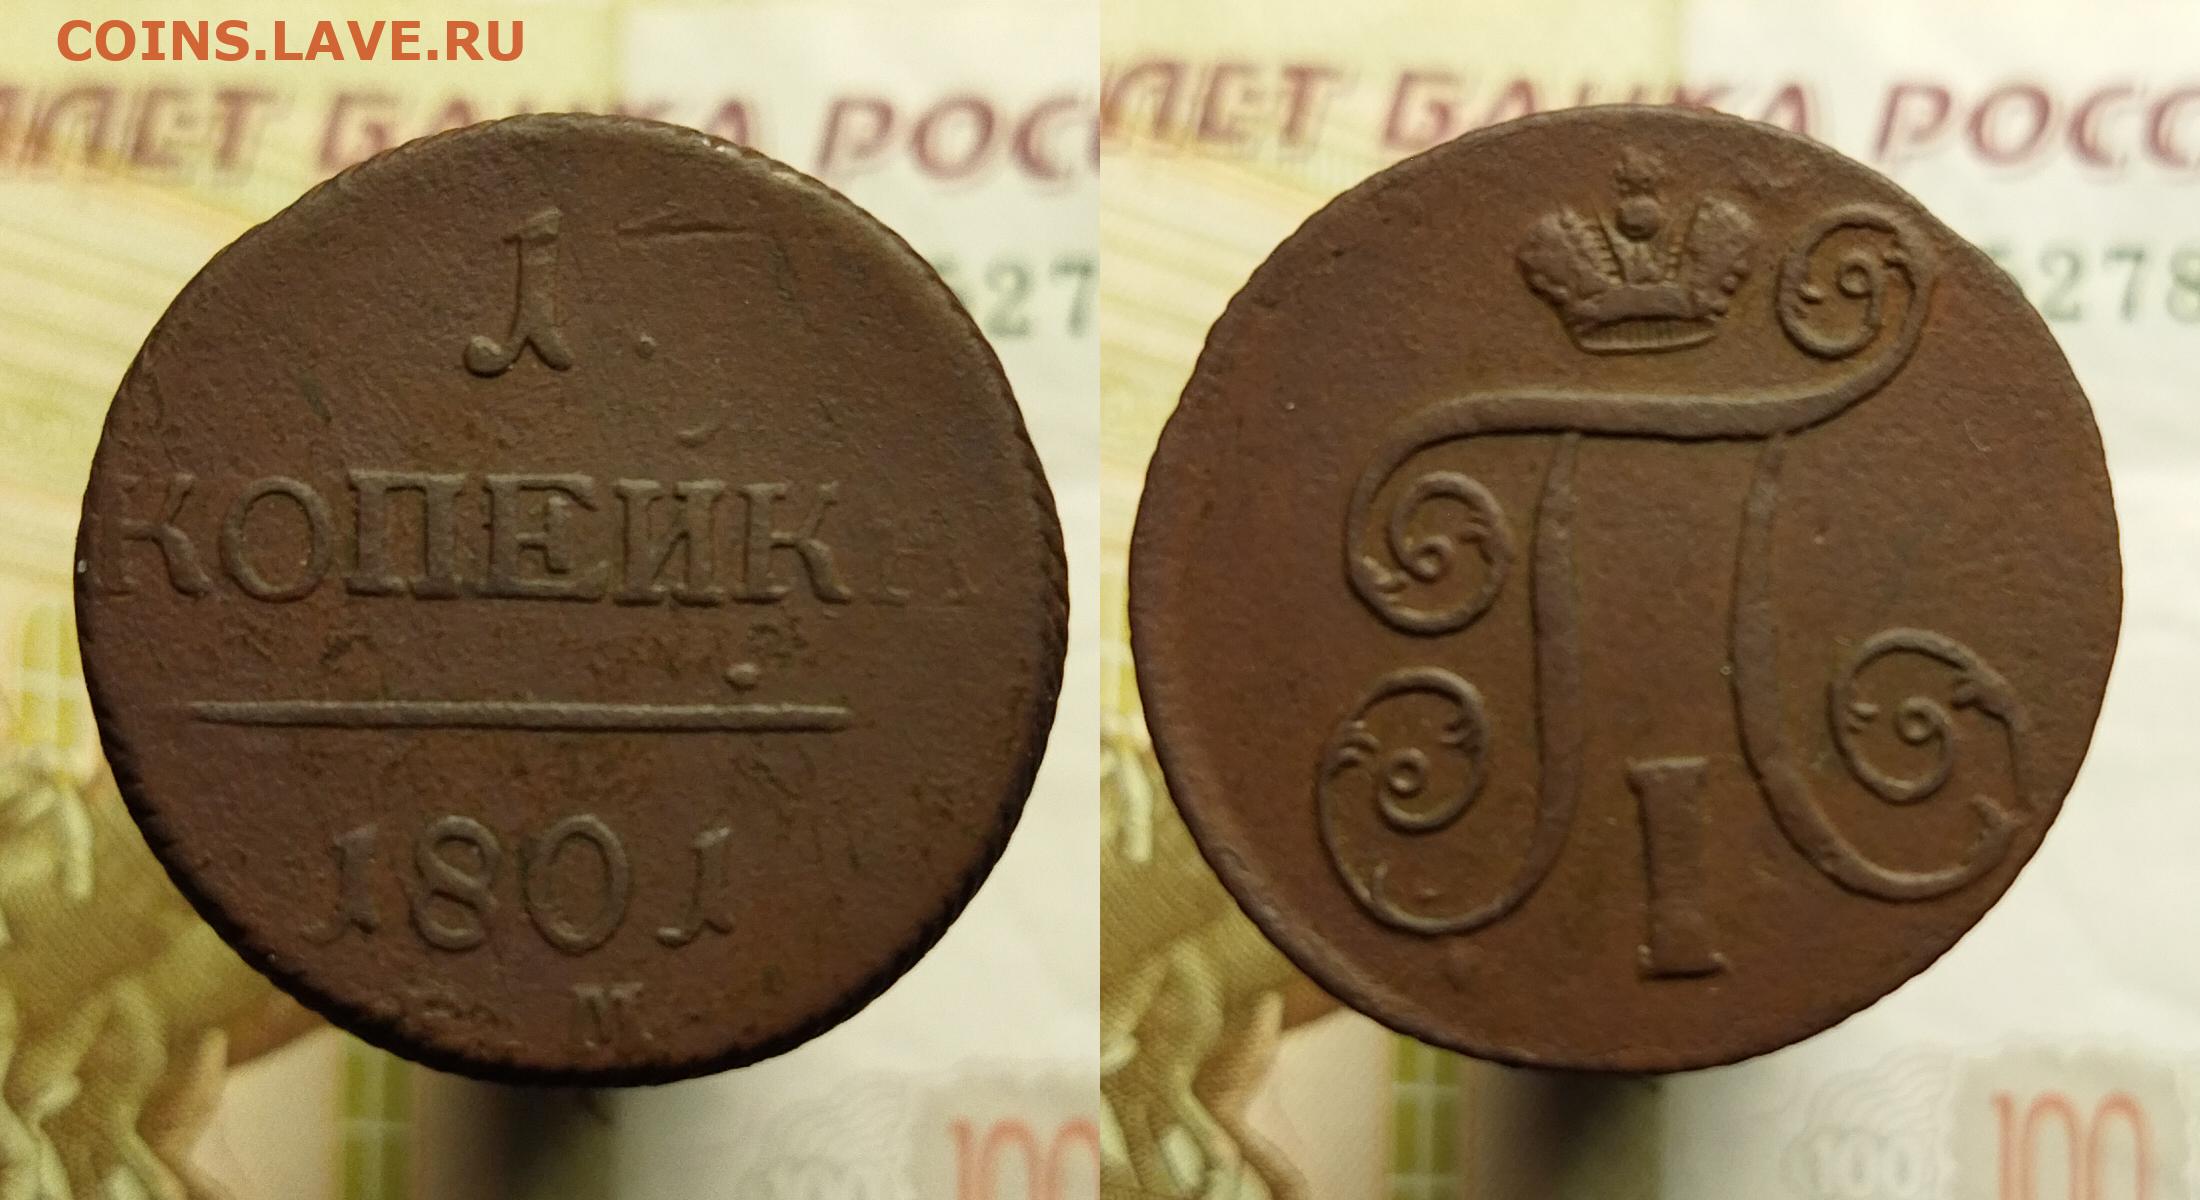 Сколько весит 1 копейка россии. История монеты 2 копейки 1801 года.